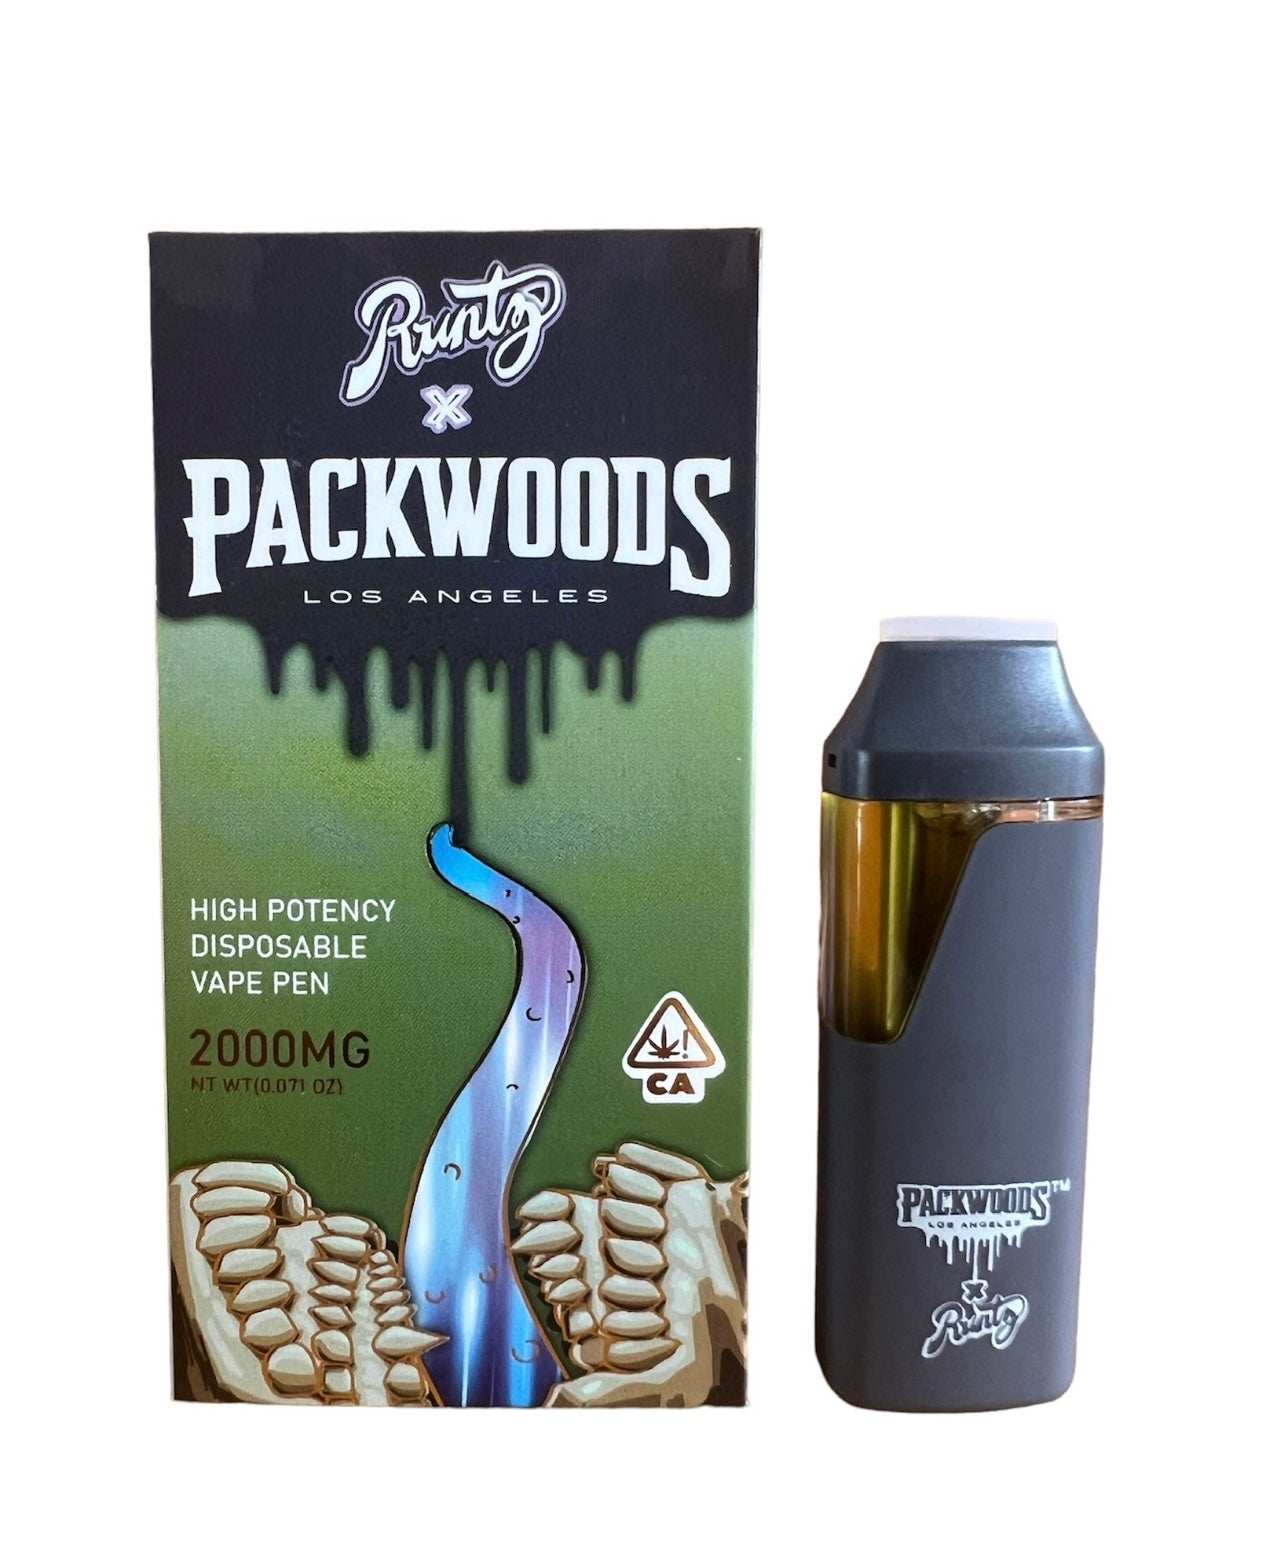 Packwoods x Runtz